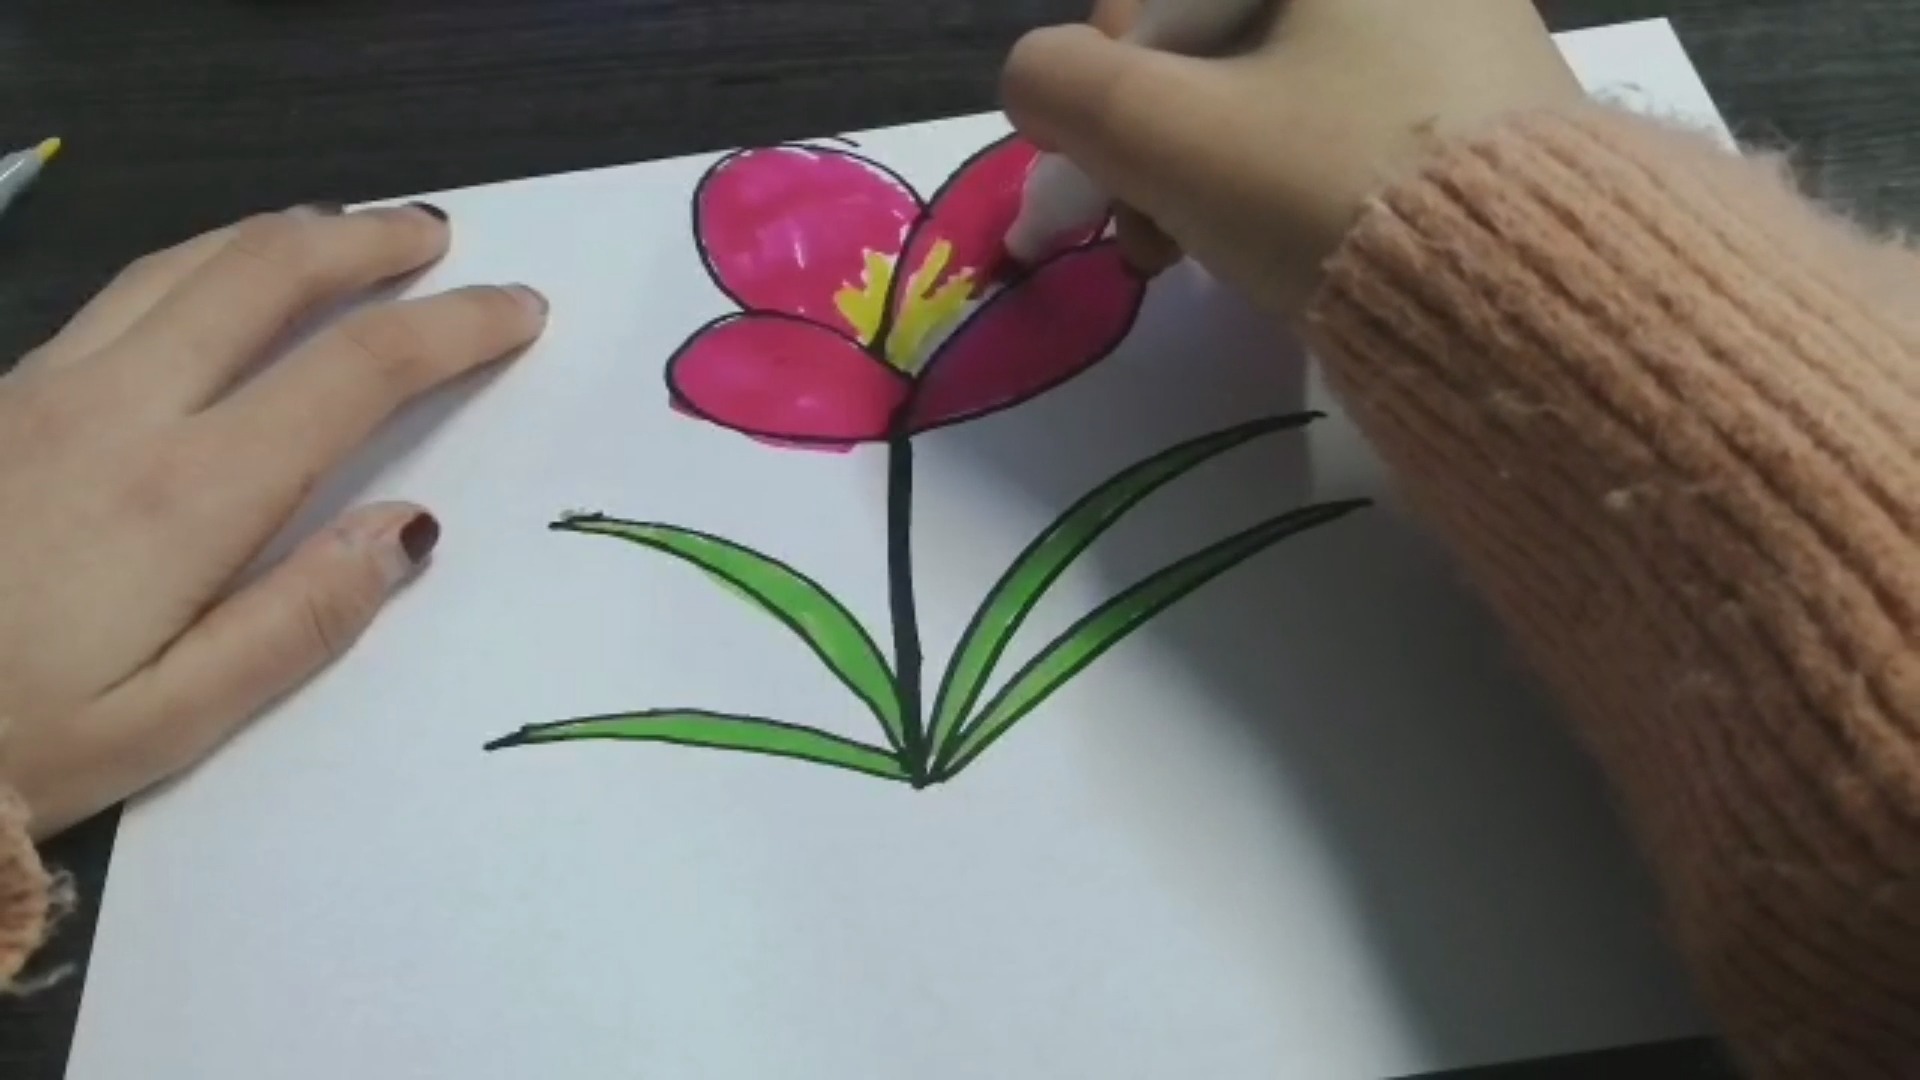 教你画鲜花,轻松学会画一个超级好看的一朵鲜花,快来学习吧!